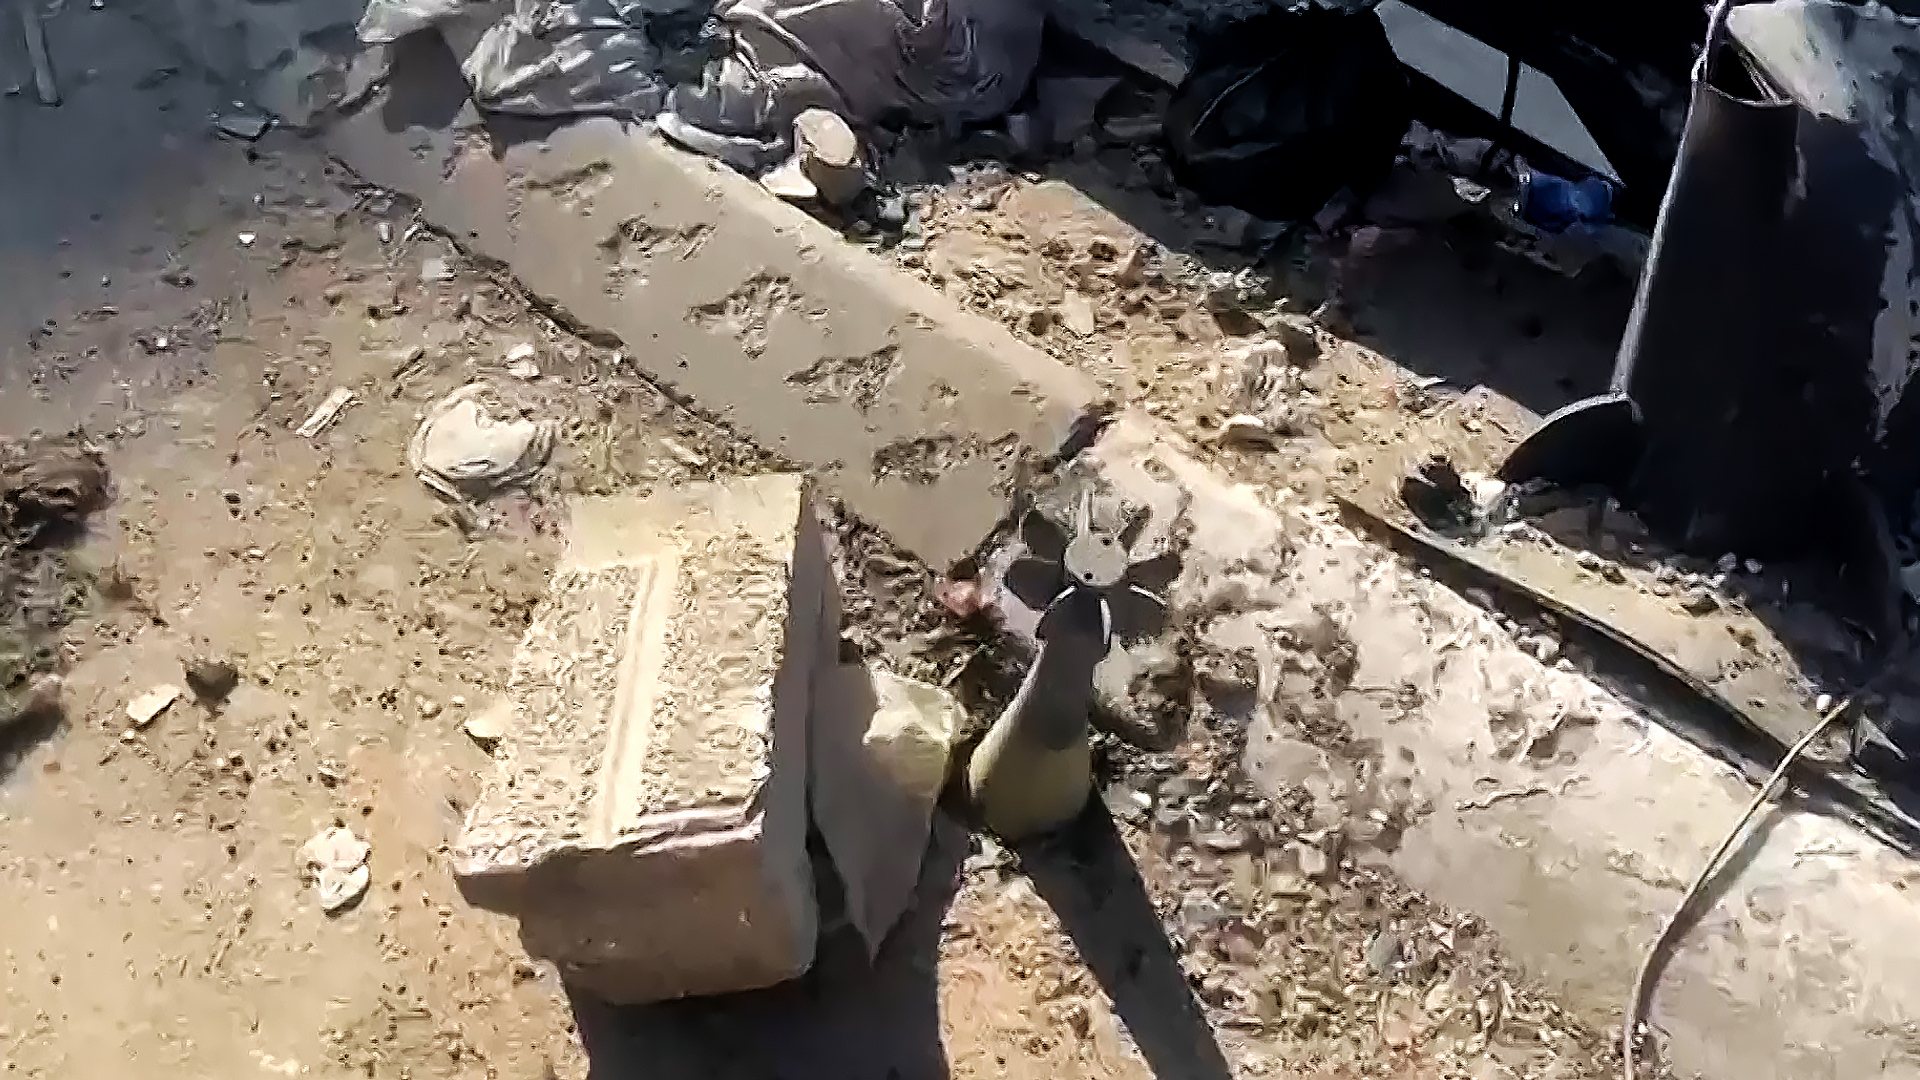 مشاهد من الدمار والمعاناة نتيجة الحصار في أحياء مدينة غزة | التقارير الإخبارية – البوكس نيوز